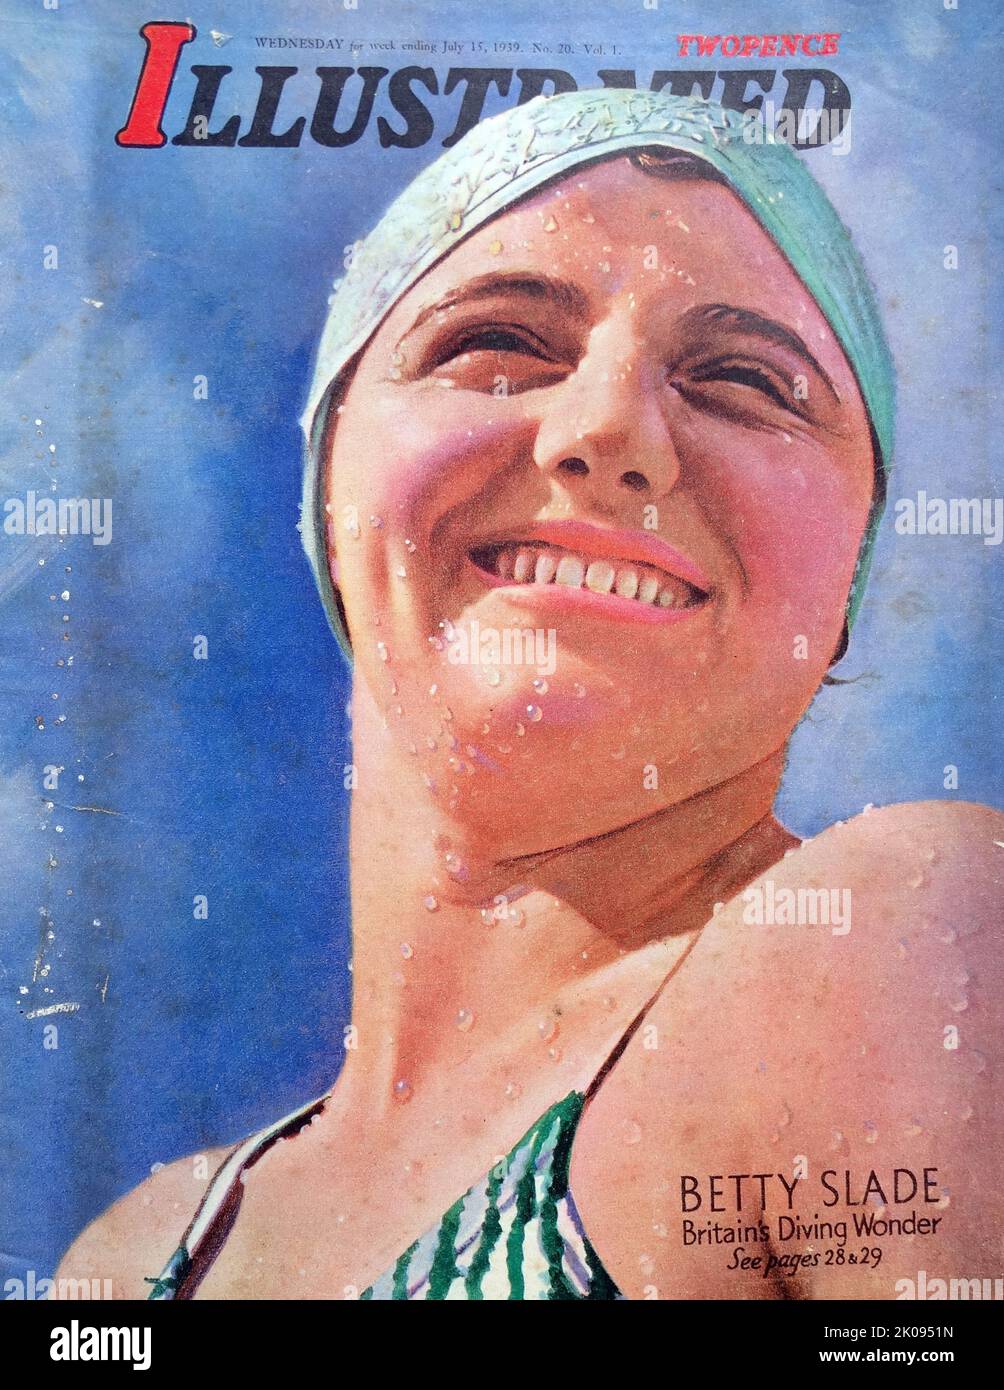 Betty Slide war eine britische Taucherin. Elizabeth Joyce Slade (18. Juni 1921 - 3. November 2000) trat bei den Olympischen Sommerspielen 1936 beim 3-Meter-Sprungbrett der Frauen an. Bei der Europameisterschaft im Wassersportereignis 1938 gewann sie ebenfalls eine Goldmedaille. Frontabdeckung der Abbildung. Stockfoto